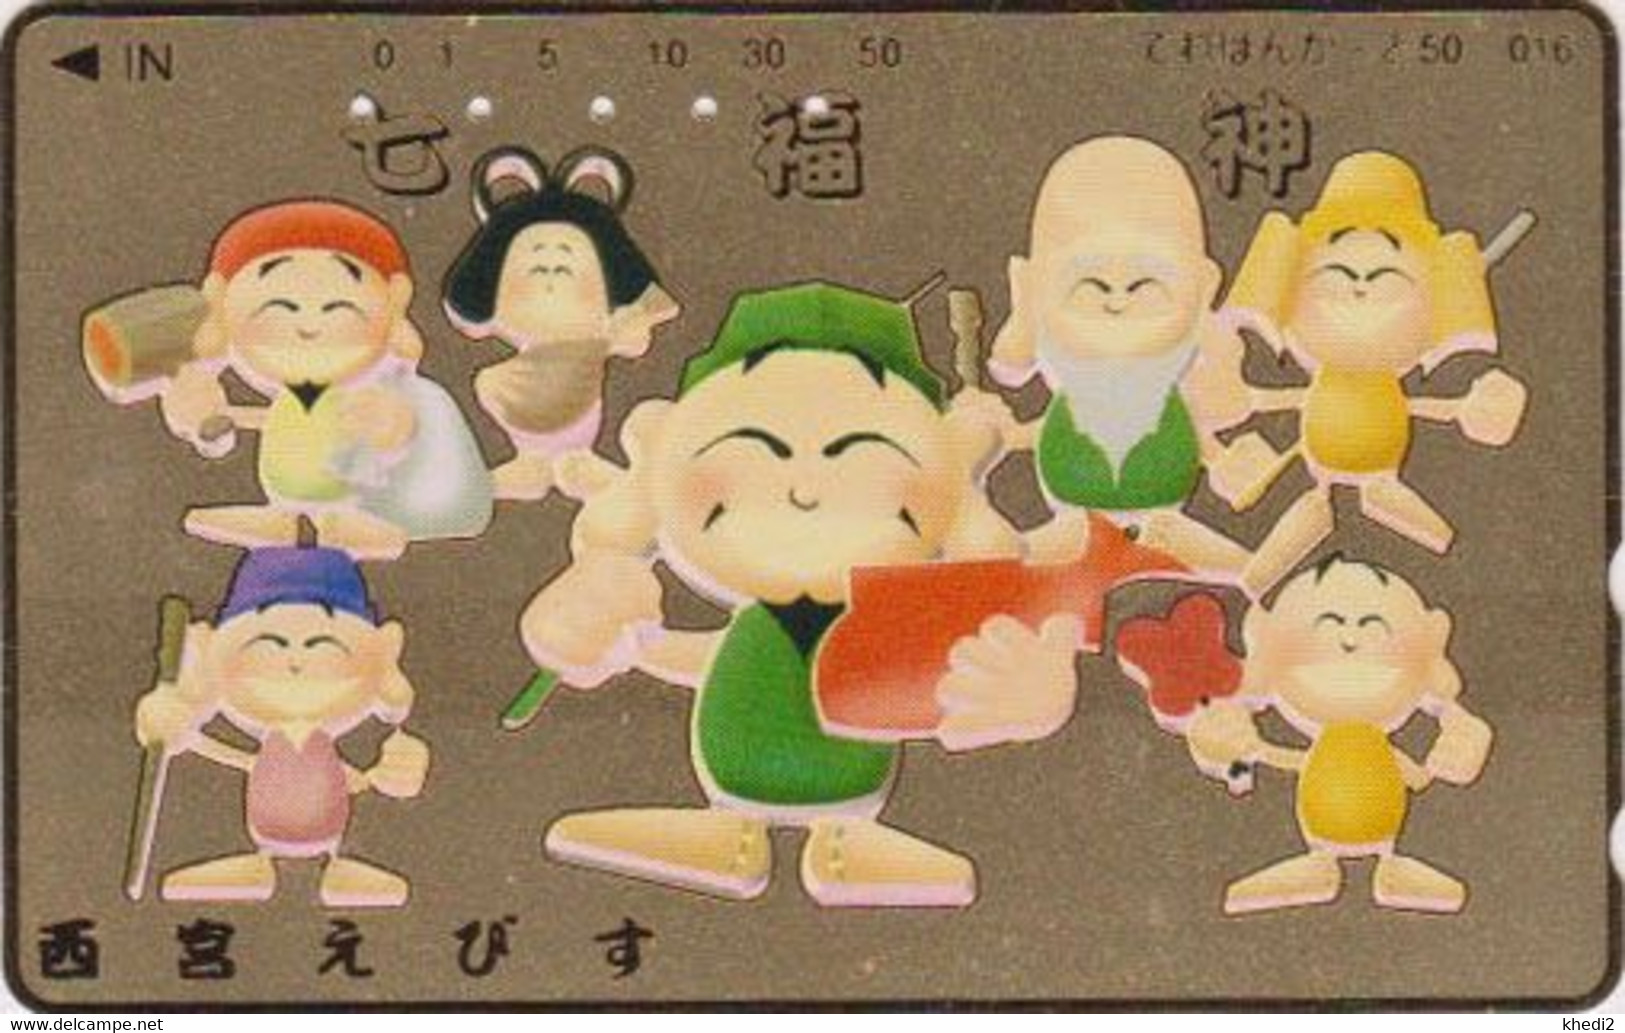 TC DOREE JAPON / 110-011 - Culture RELIGION - 7 DIEUX DU BONHEUR - LUCK GODS JAPAN GOLD Phonecard - 324 - Cultural